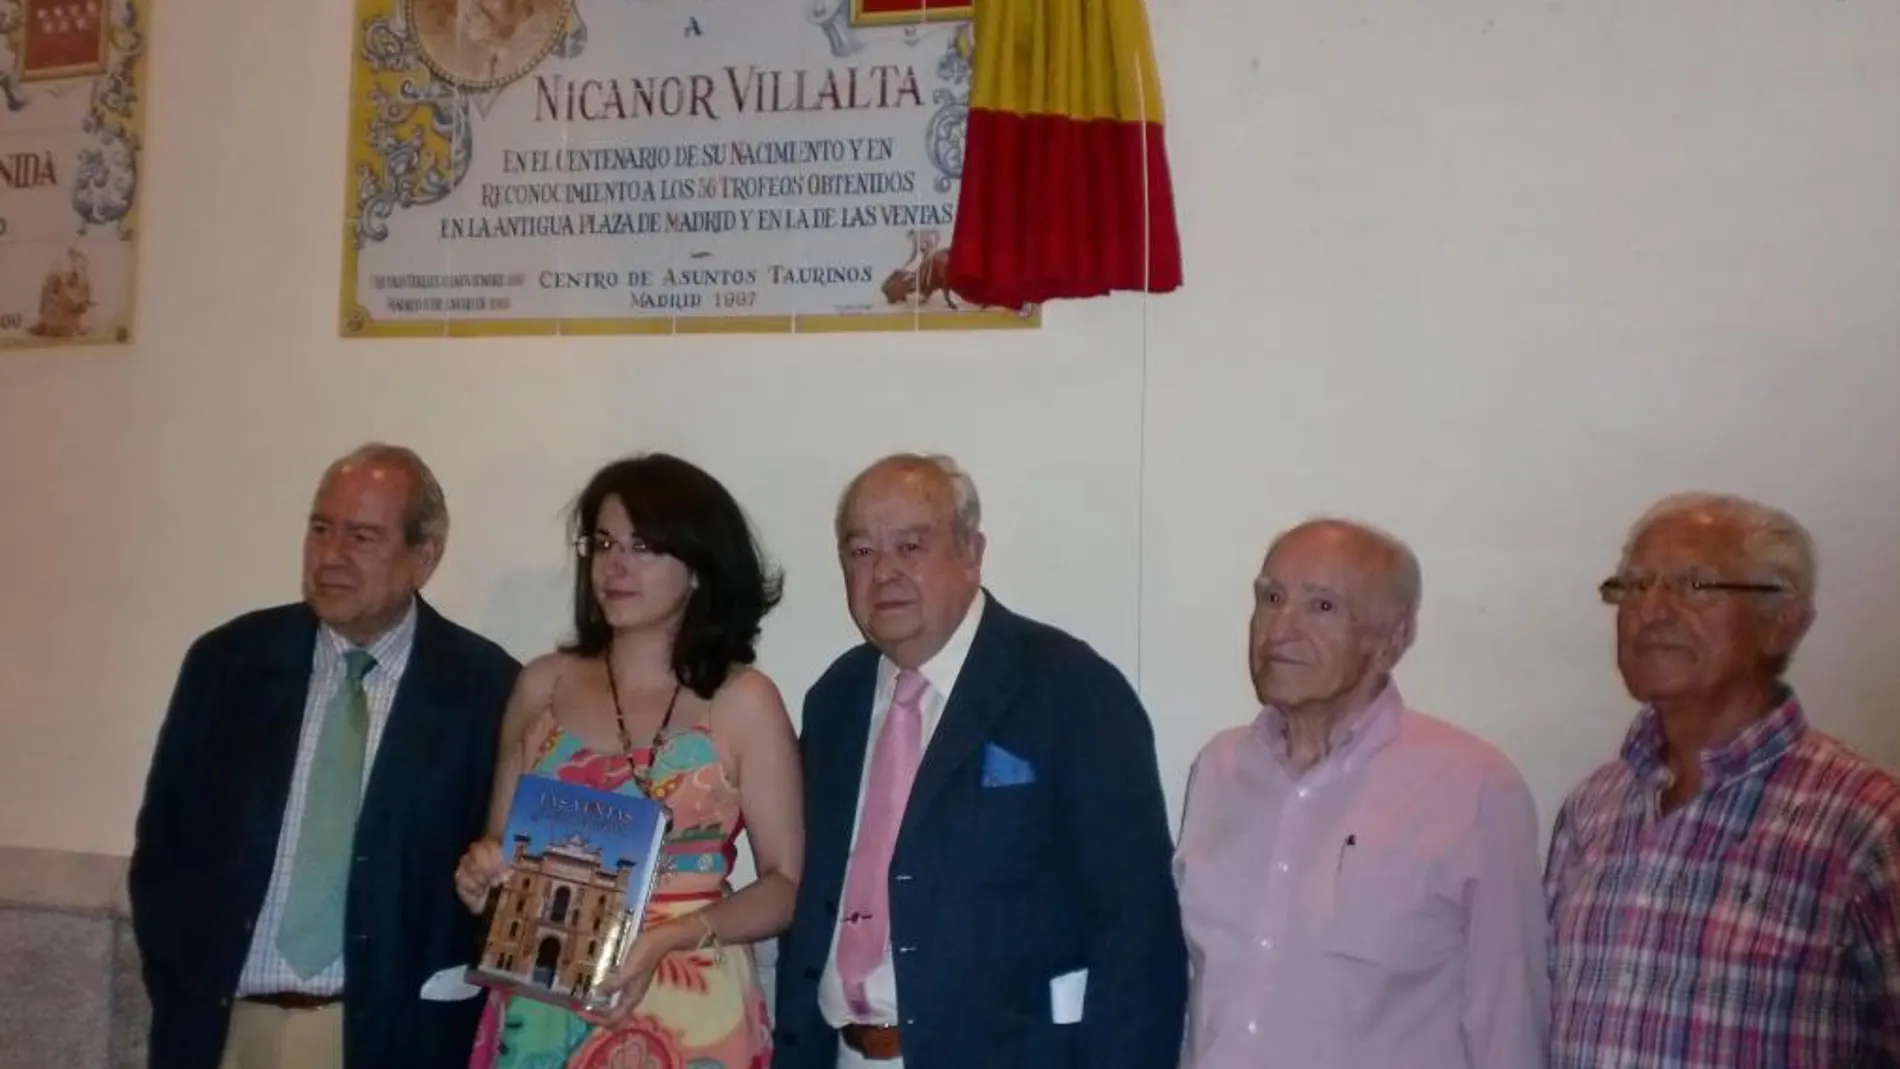 Renovado azulejo en Las Ventas en honor a Nicanor Villalta